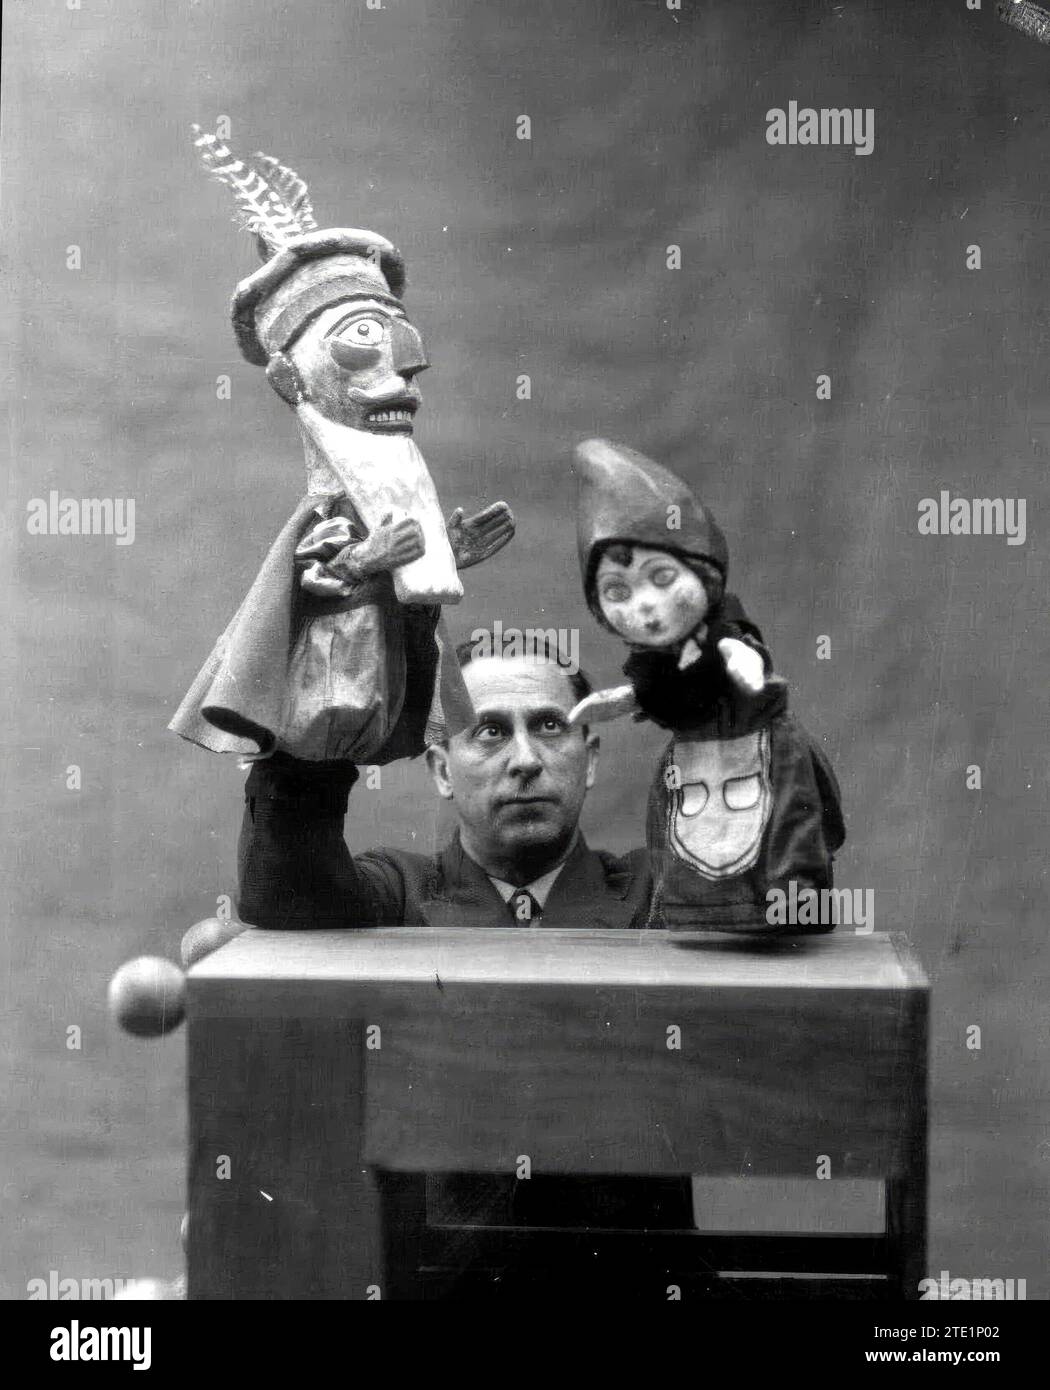 12/31/1929. Bartolozzi avec deux poupées de sa création. Crédit : Album / Archivo ABC / Alfonso Banque D'Images